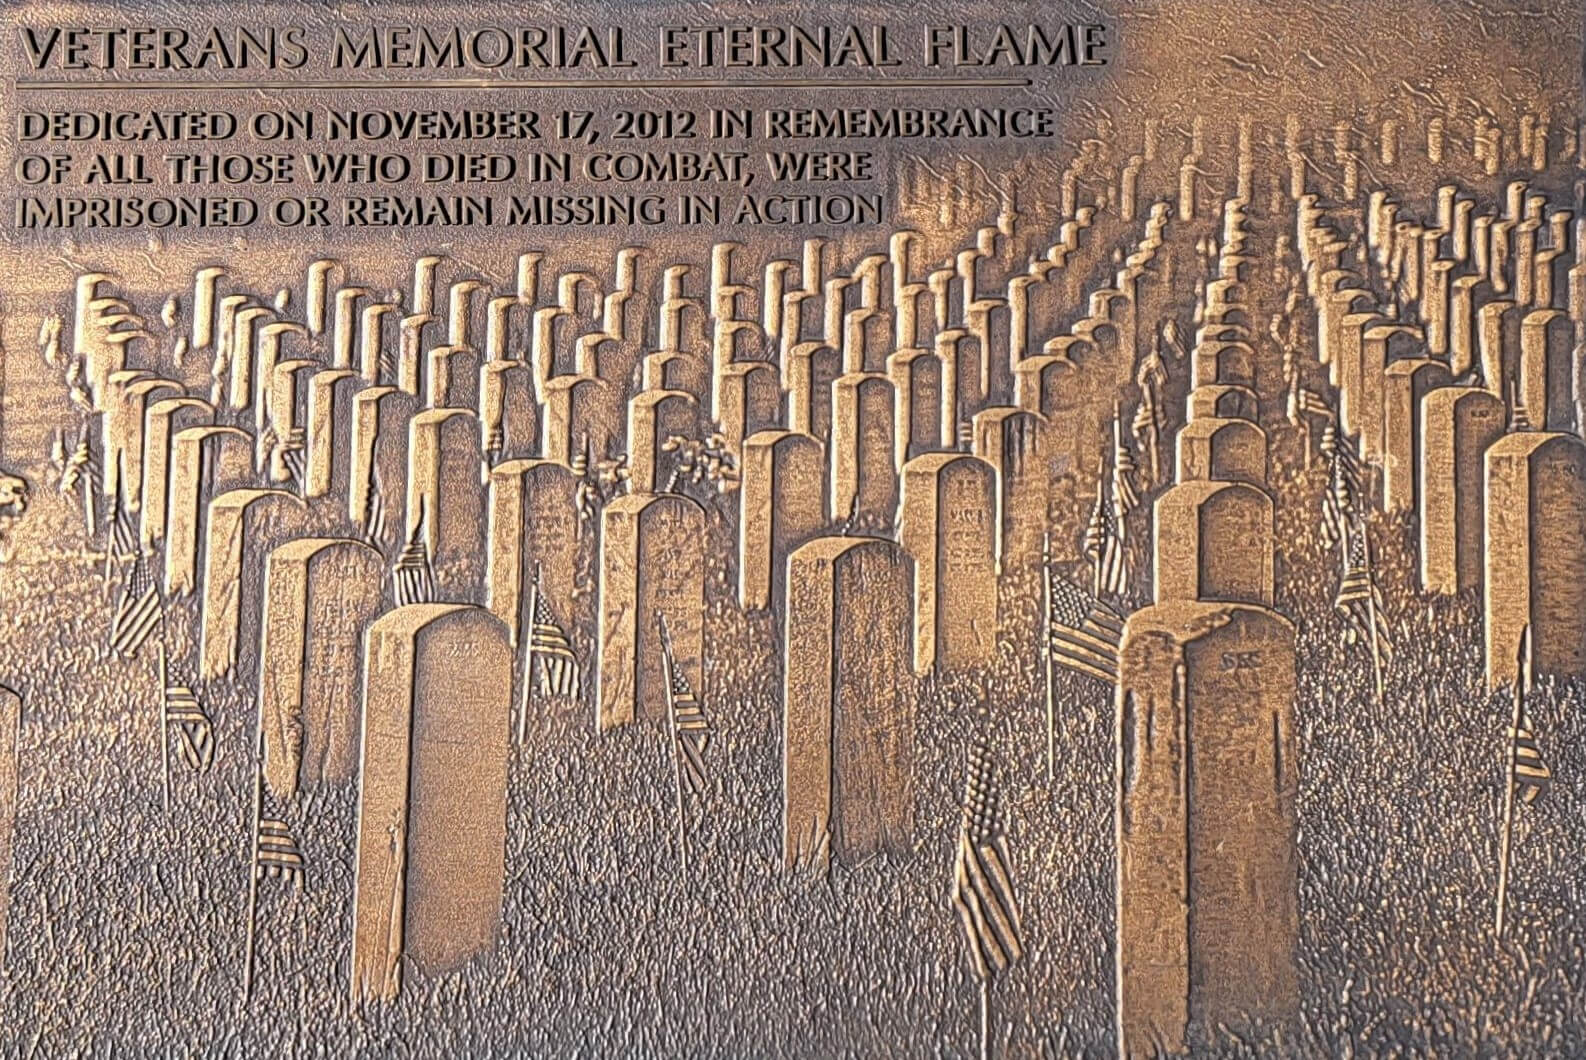 A beautiful picture and art representing Veterans Memorial Eternal Flame